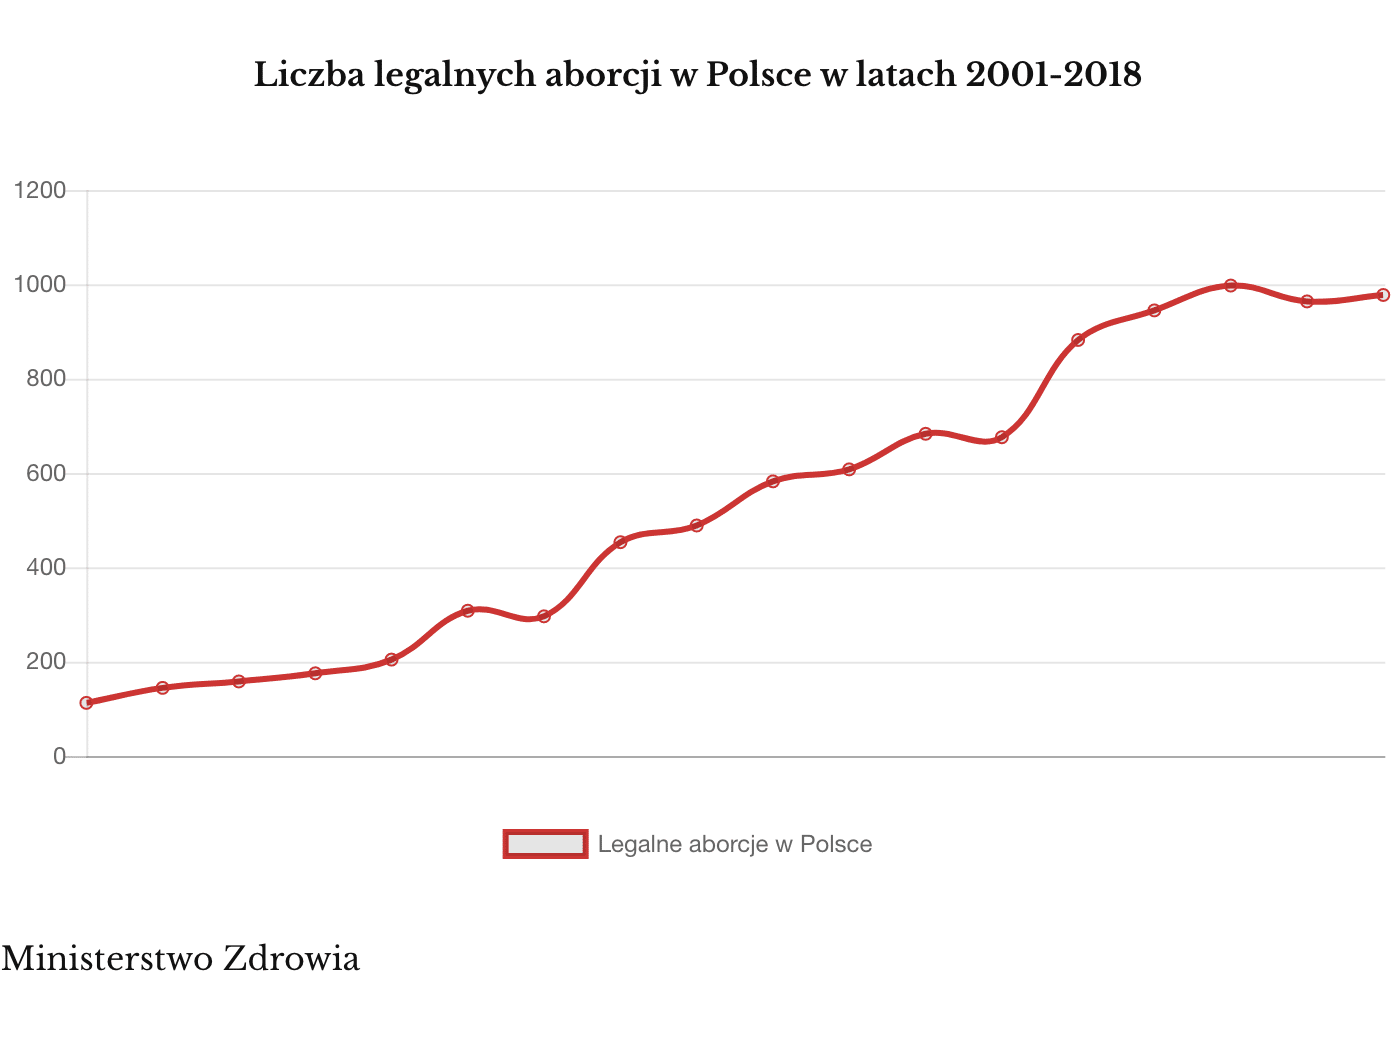 Legalne aborcje w Polsce 2001-2018